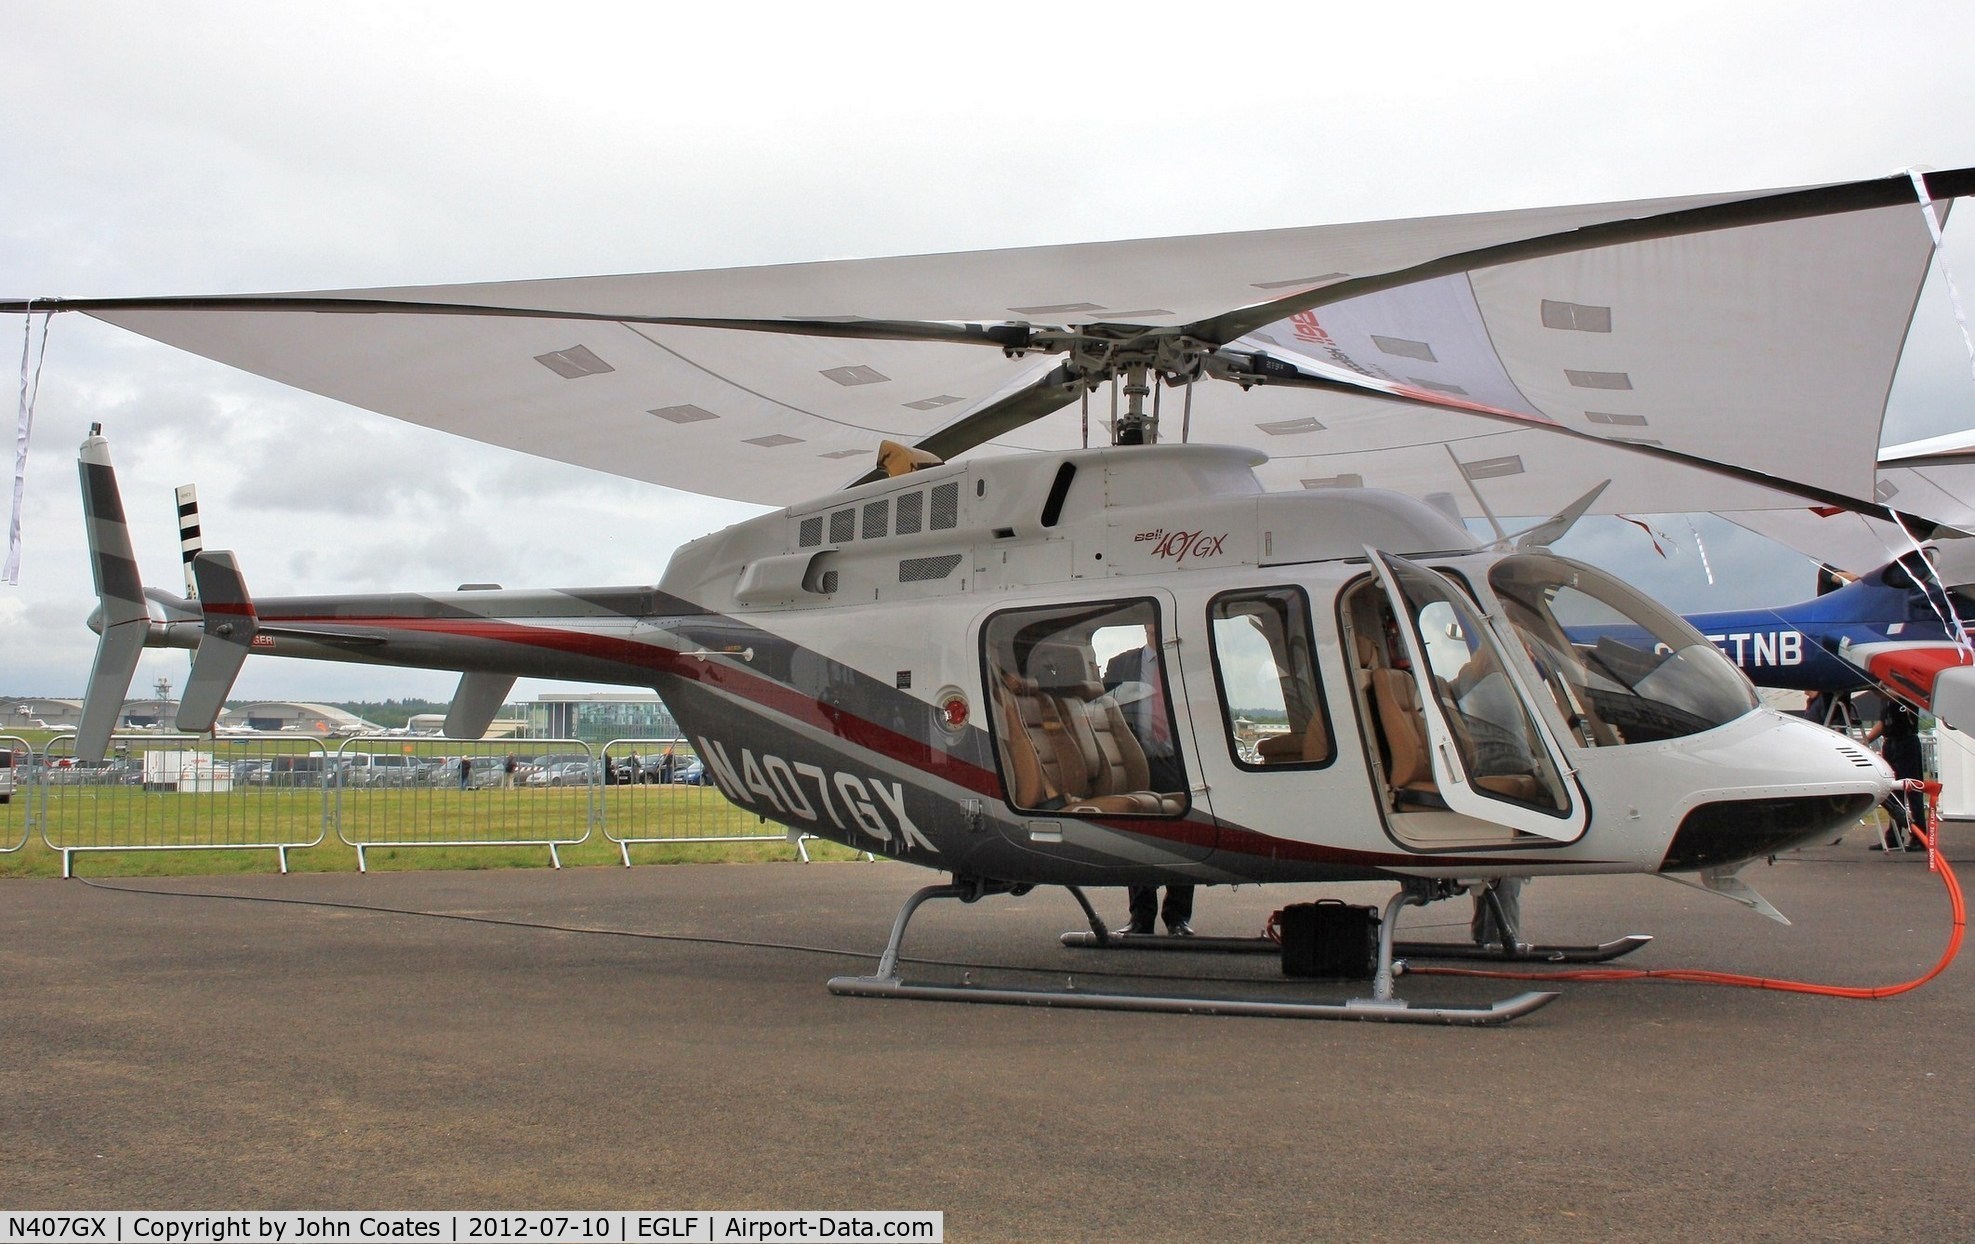 N407GX, 2010 Bell 407 C/N 54300, At FIA 2012